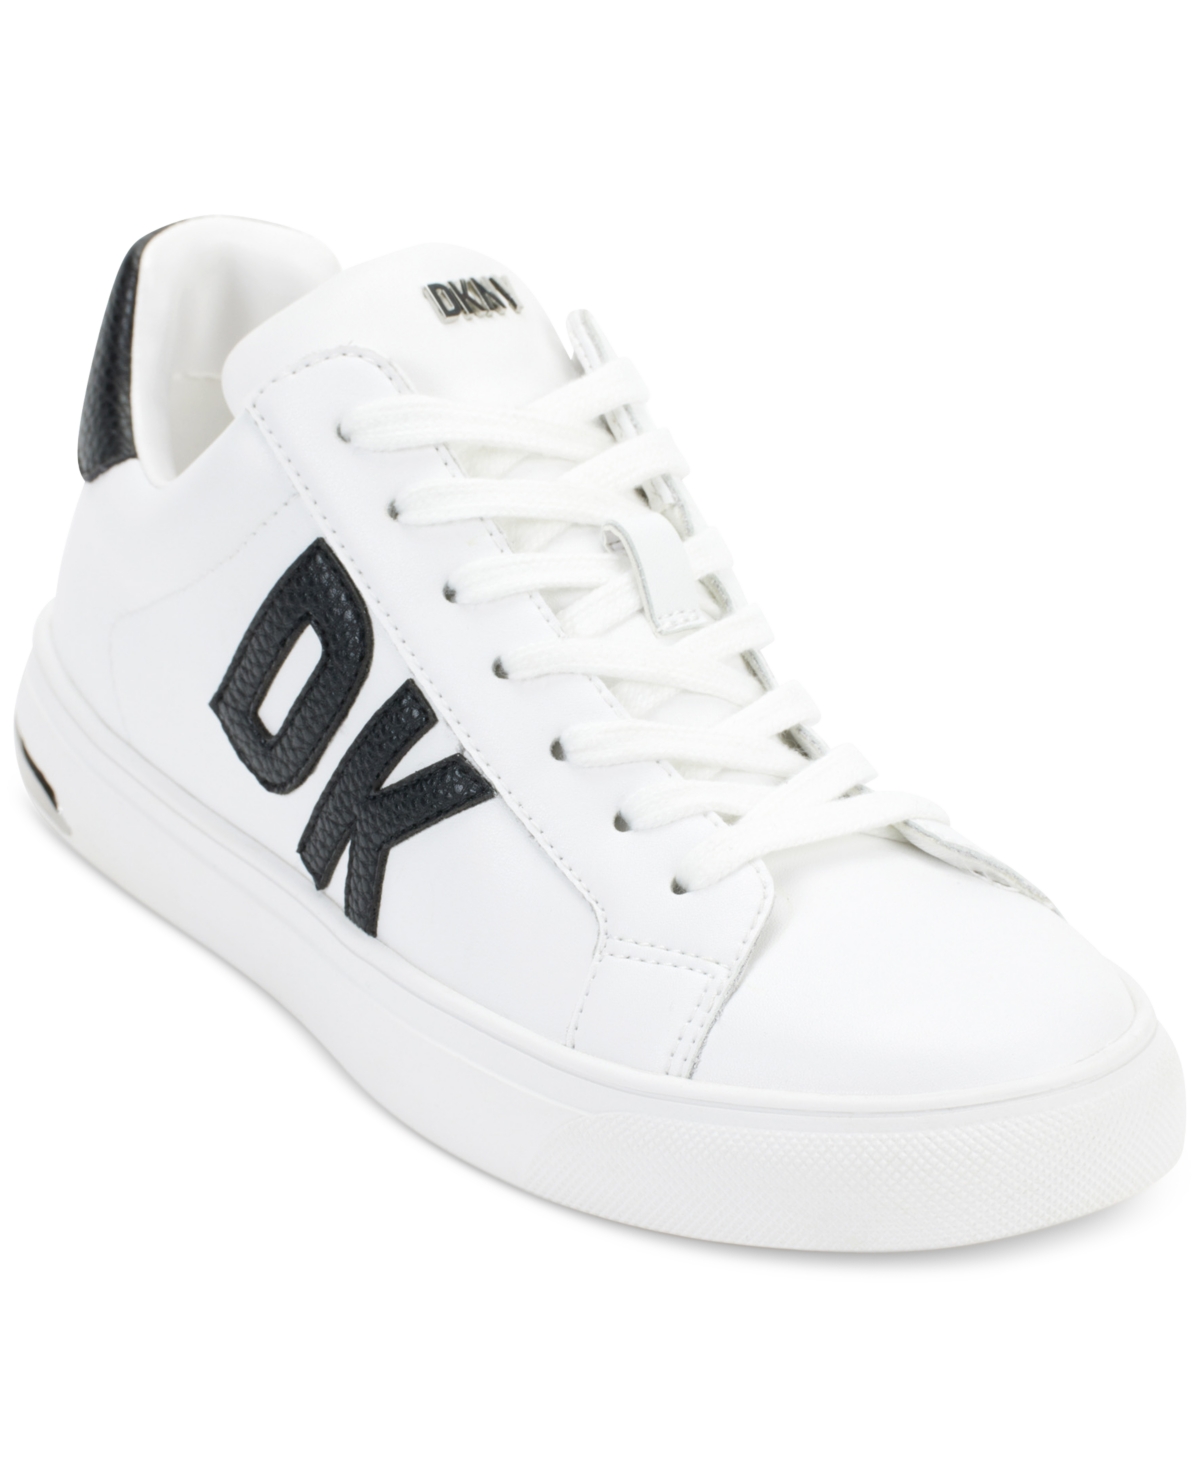 Abeni Platform Low Top Sneakers - Bright White/ Silver